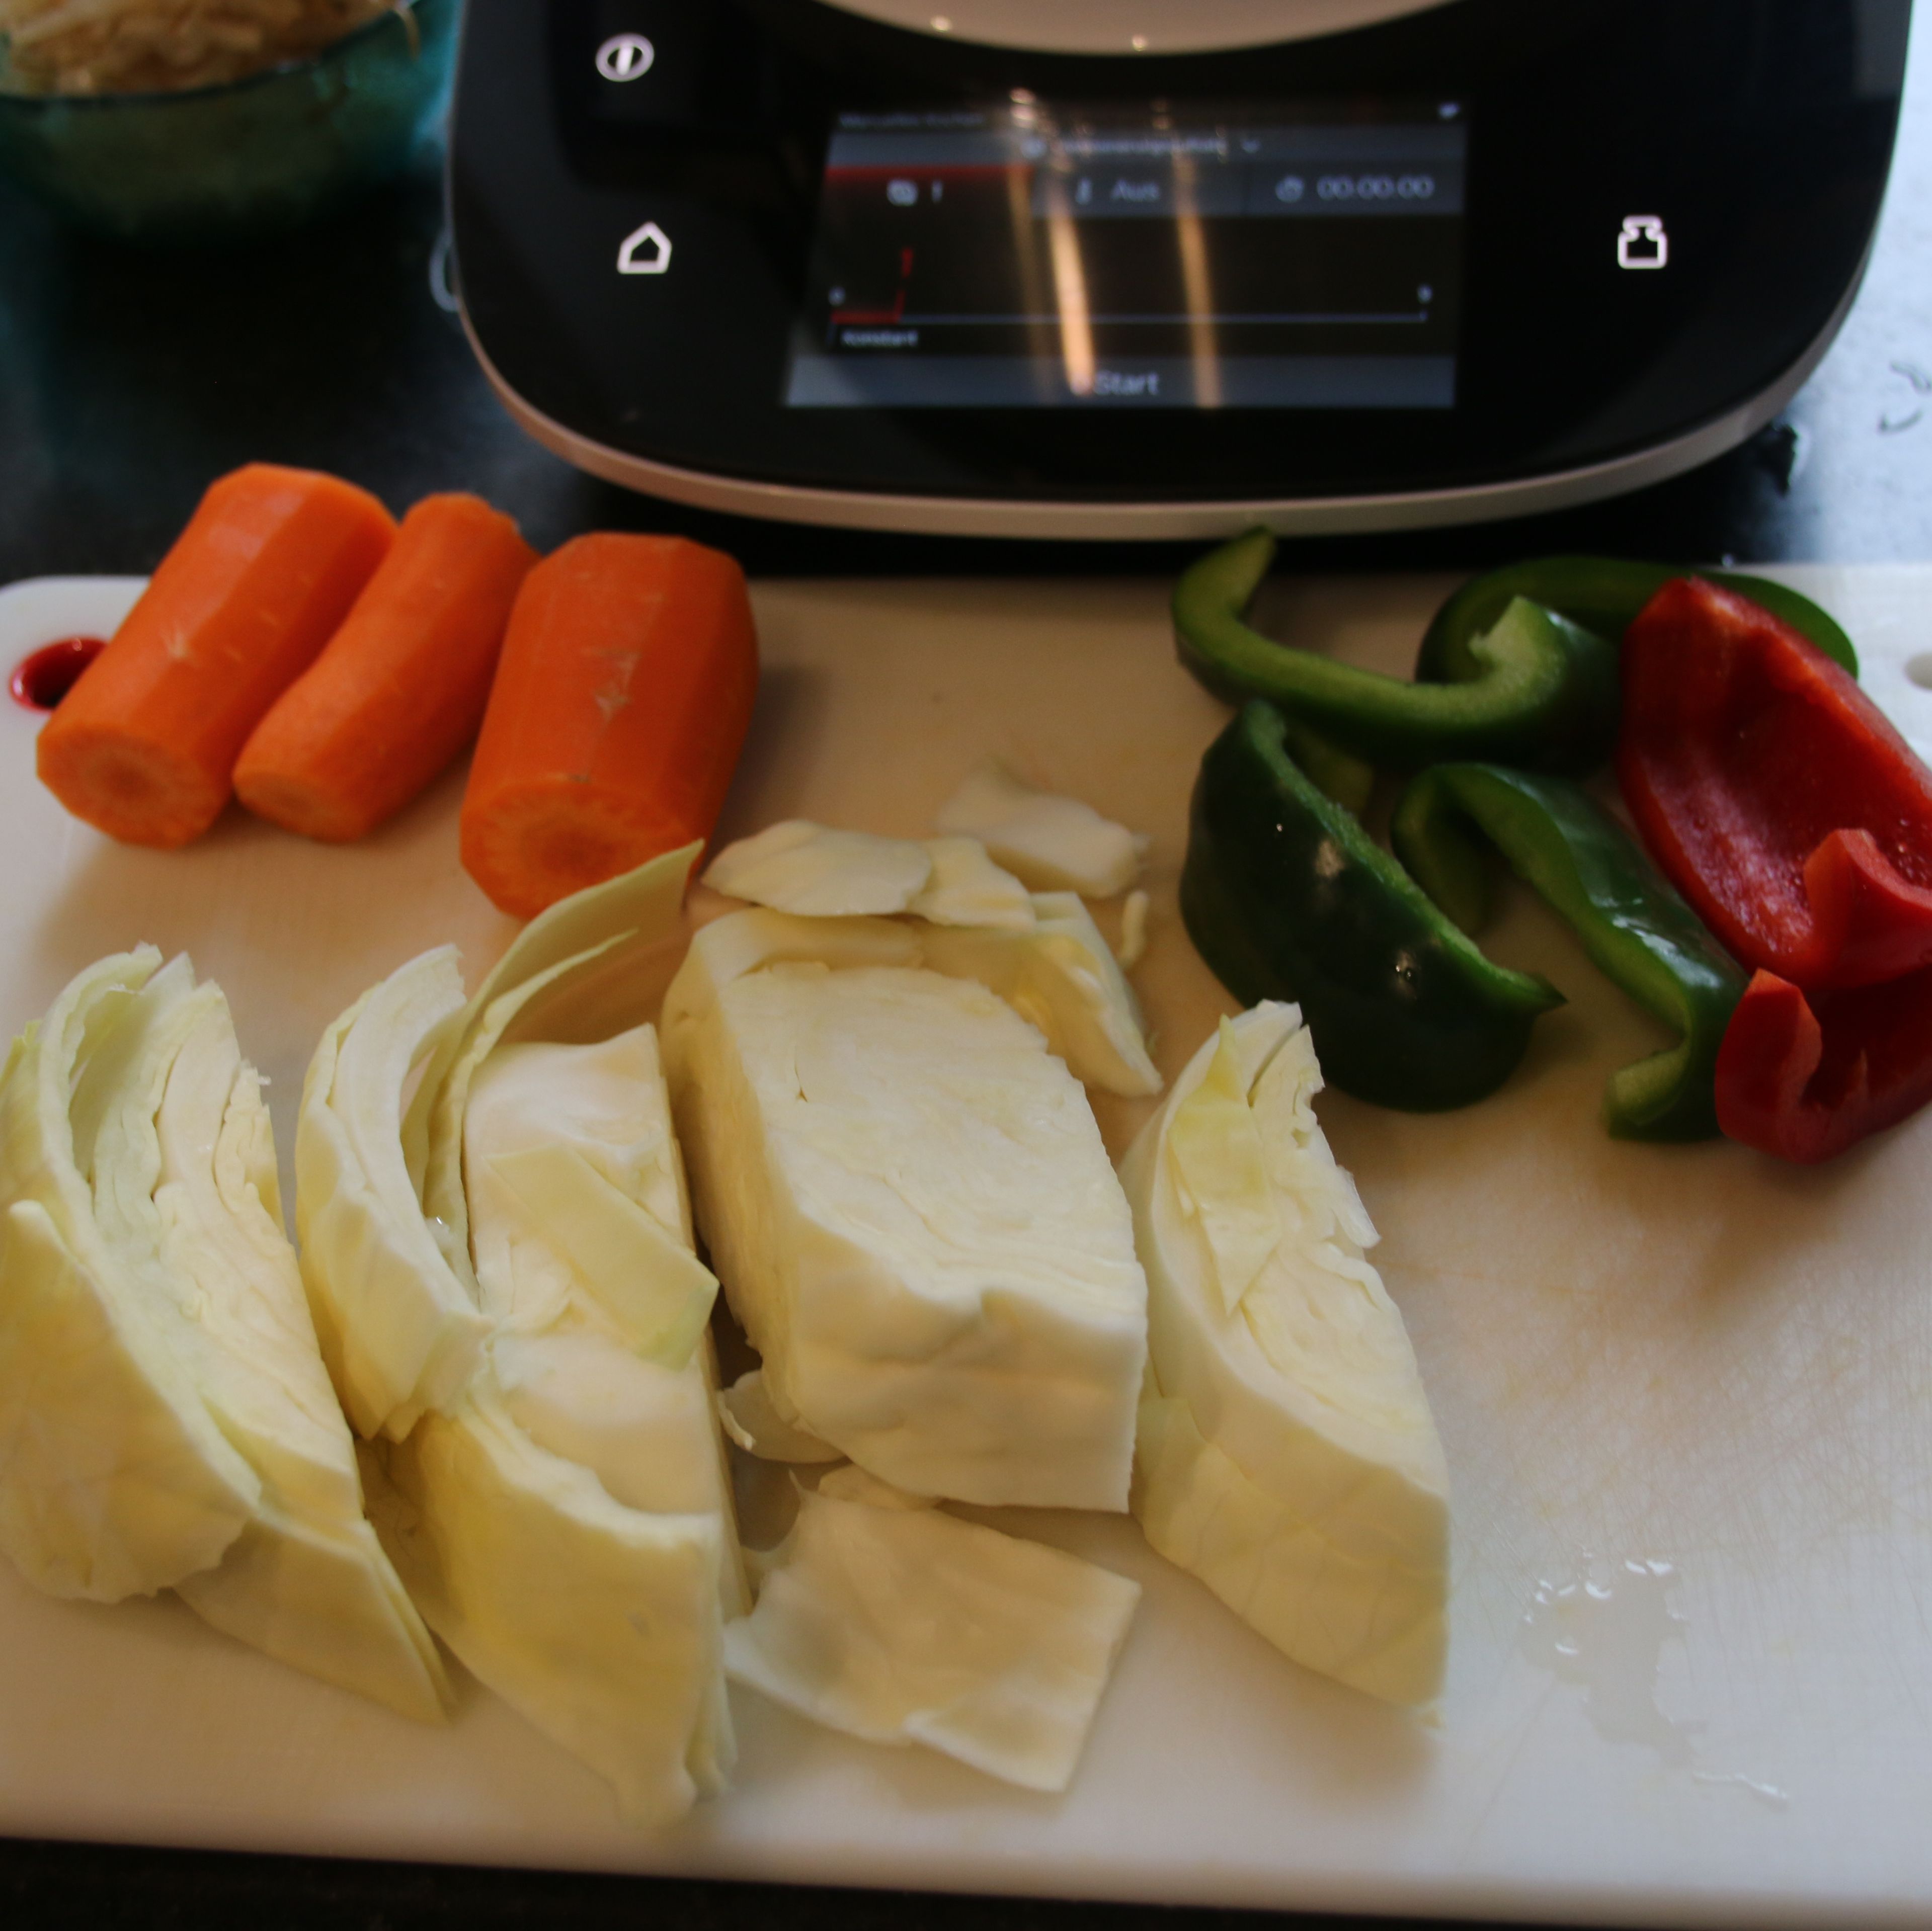 Gemüse vorbereiten: Paprika waschen, entkernen und grob zerkleinern, Karotte schälen und grob zerkleinern, Weißkohl in 2-3 cm große Riegel zerteilen.